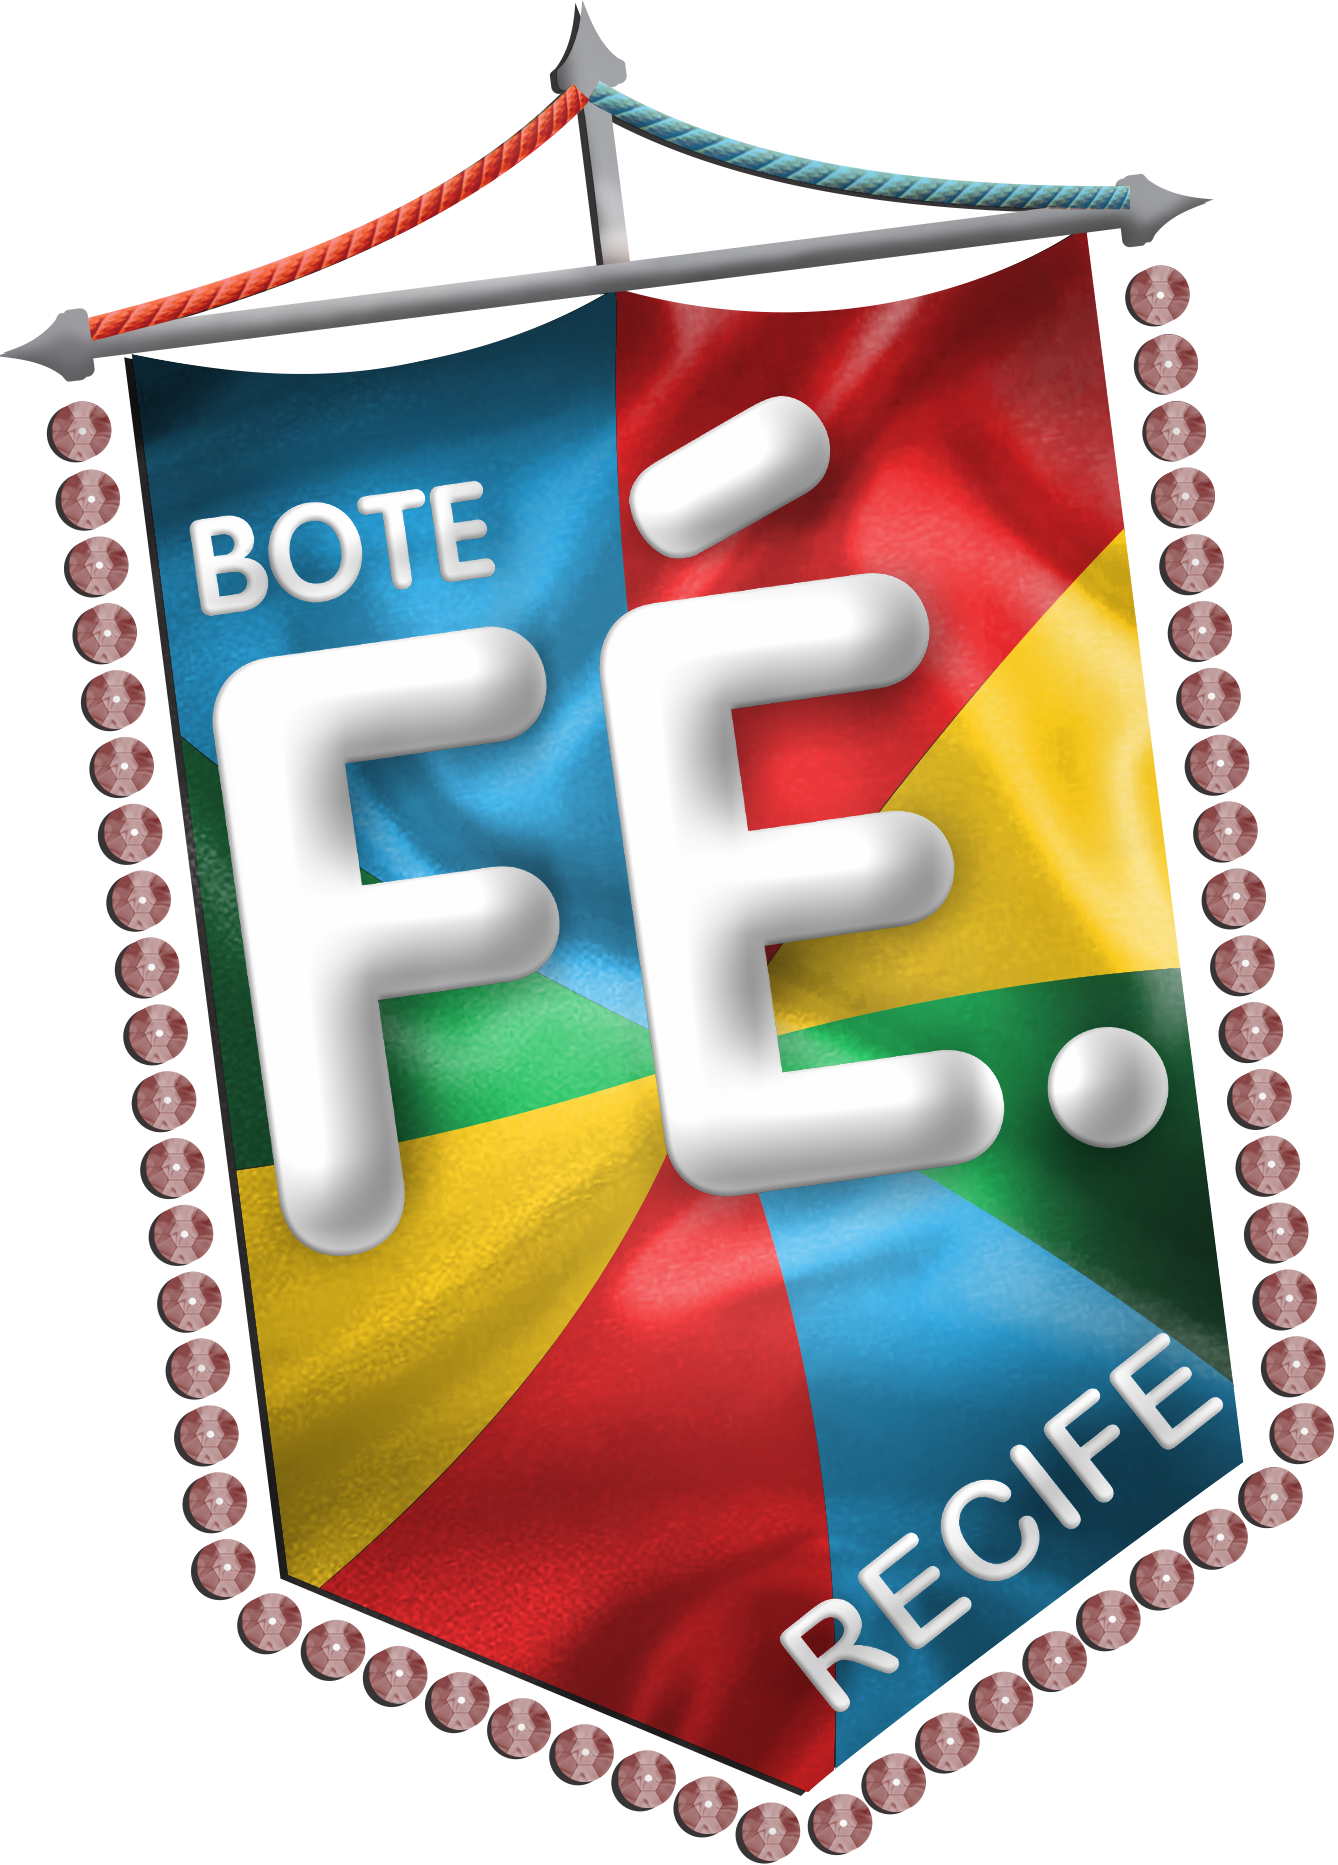 Bote Fé Recife (1338x1865)